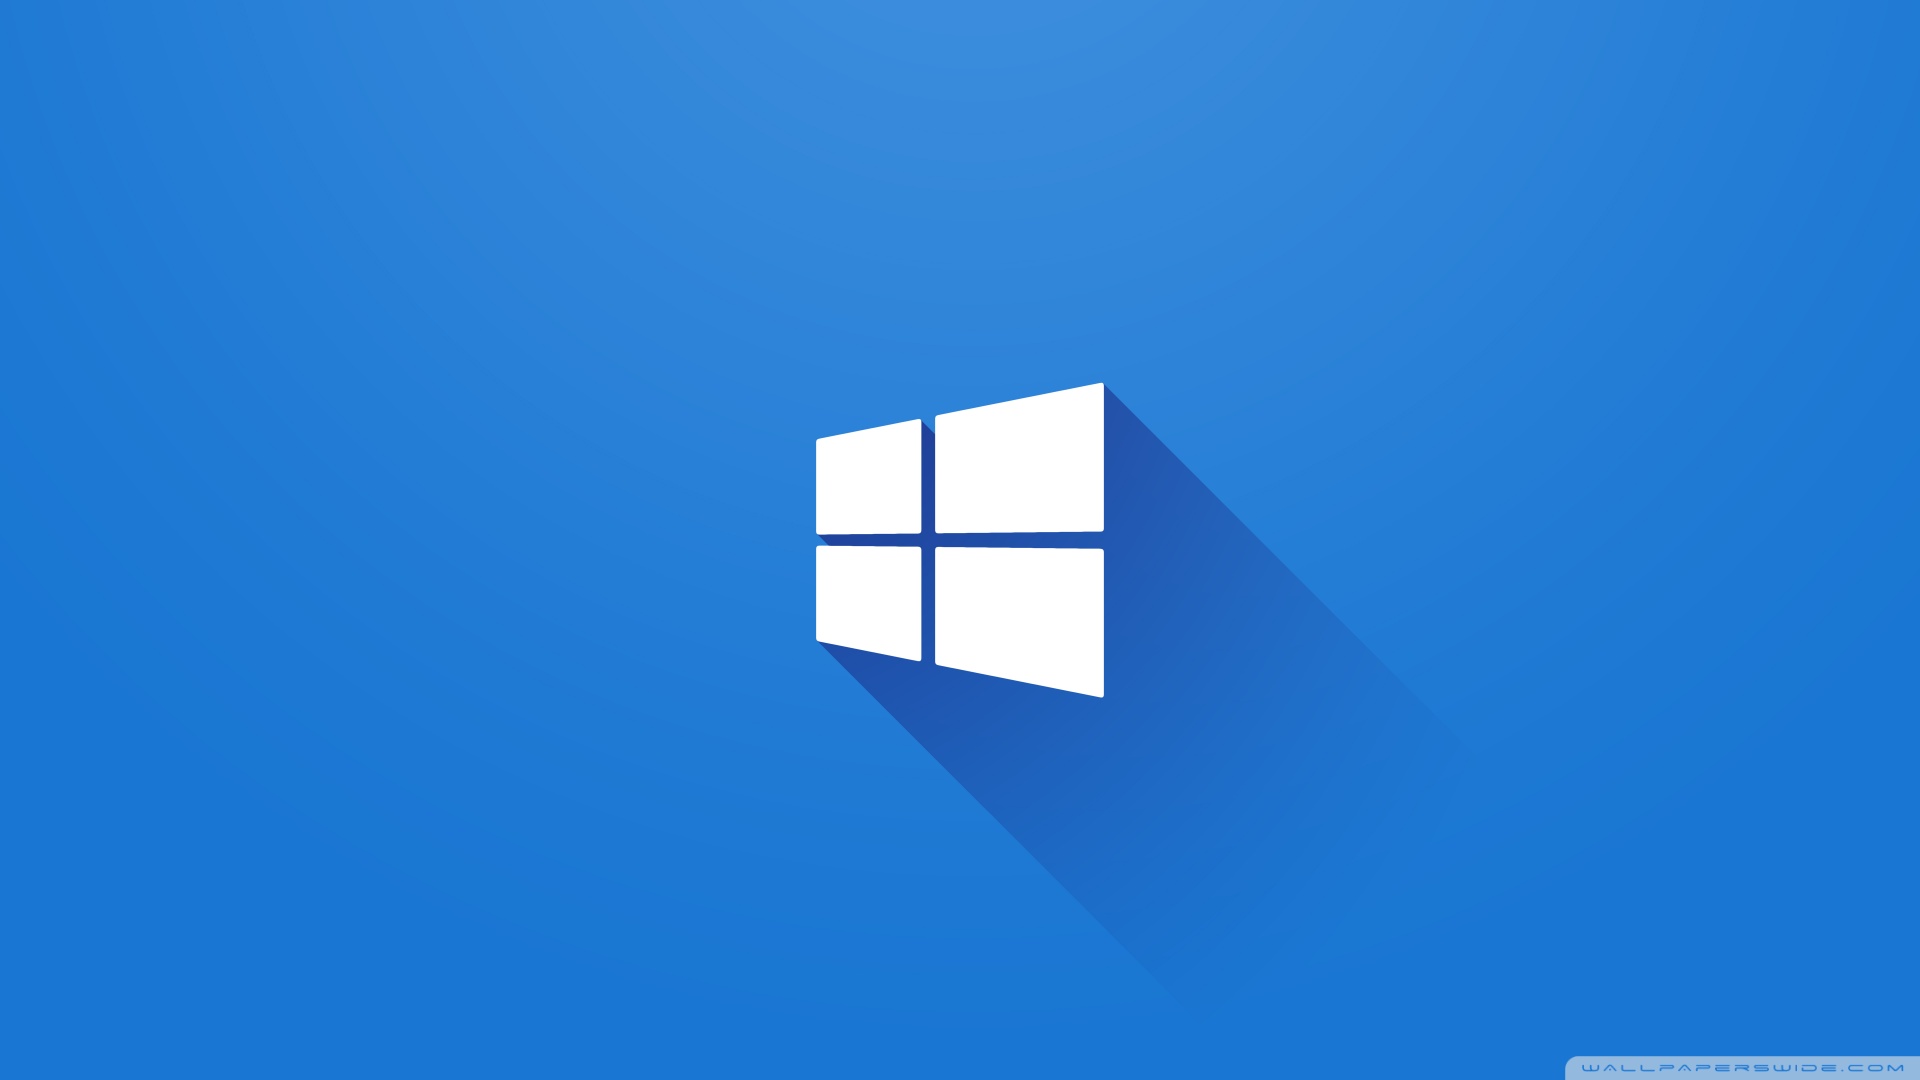 47+] Wallpaper Manager Windows 10 on WallpaperSafari